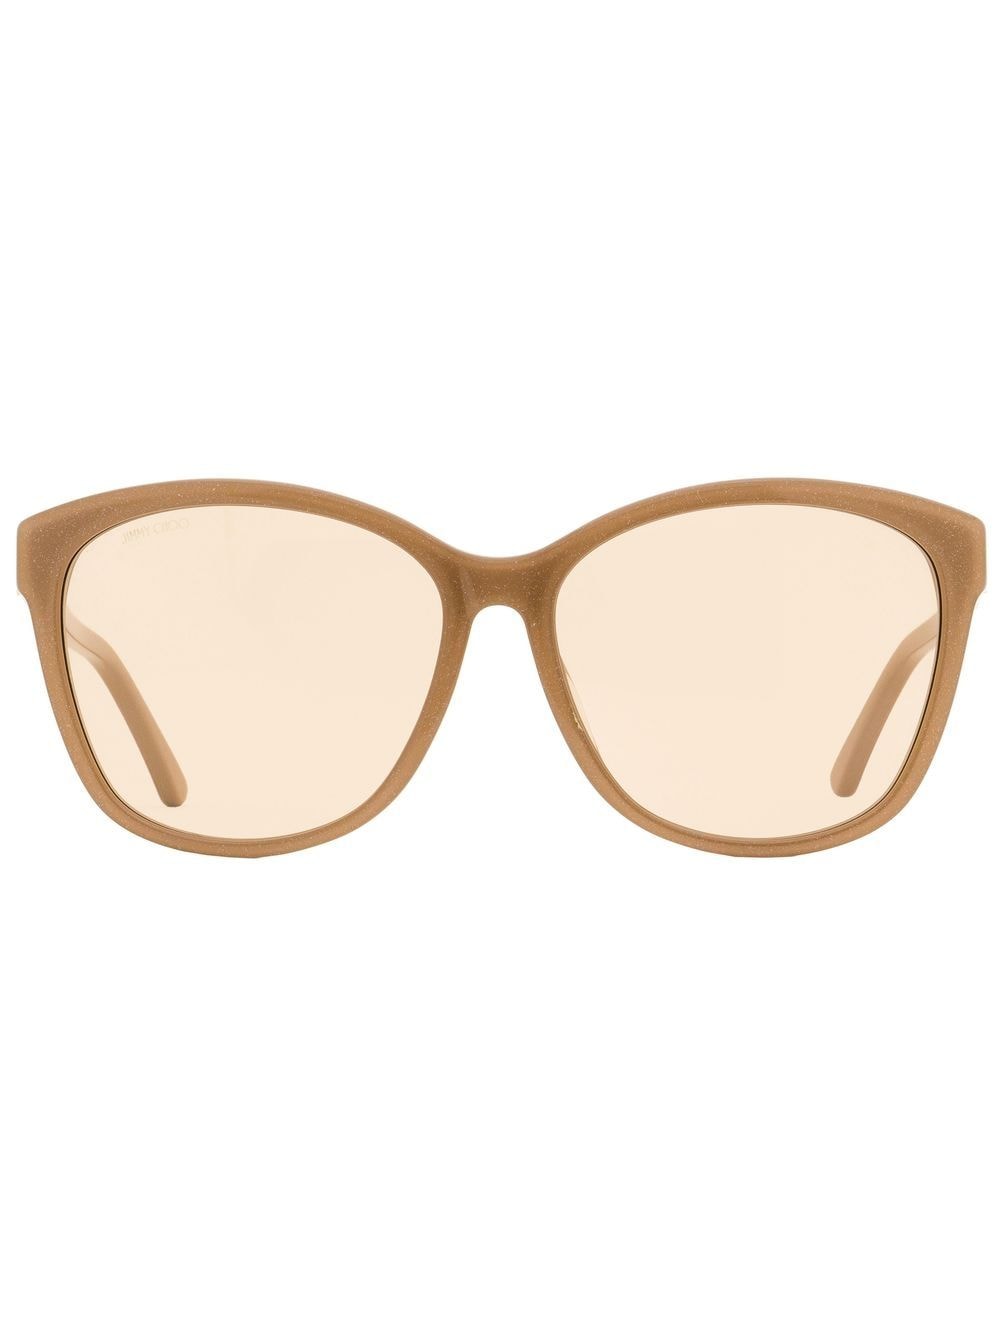 Jimmy Choo Eyewear Lidie Butterfly sunglasses - Neutrals von Jimmy Choo Eyewear